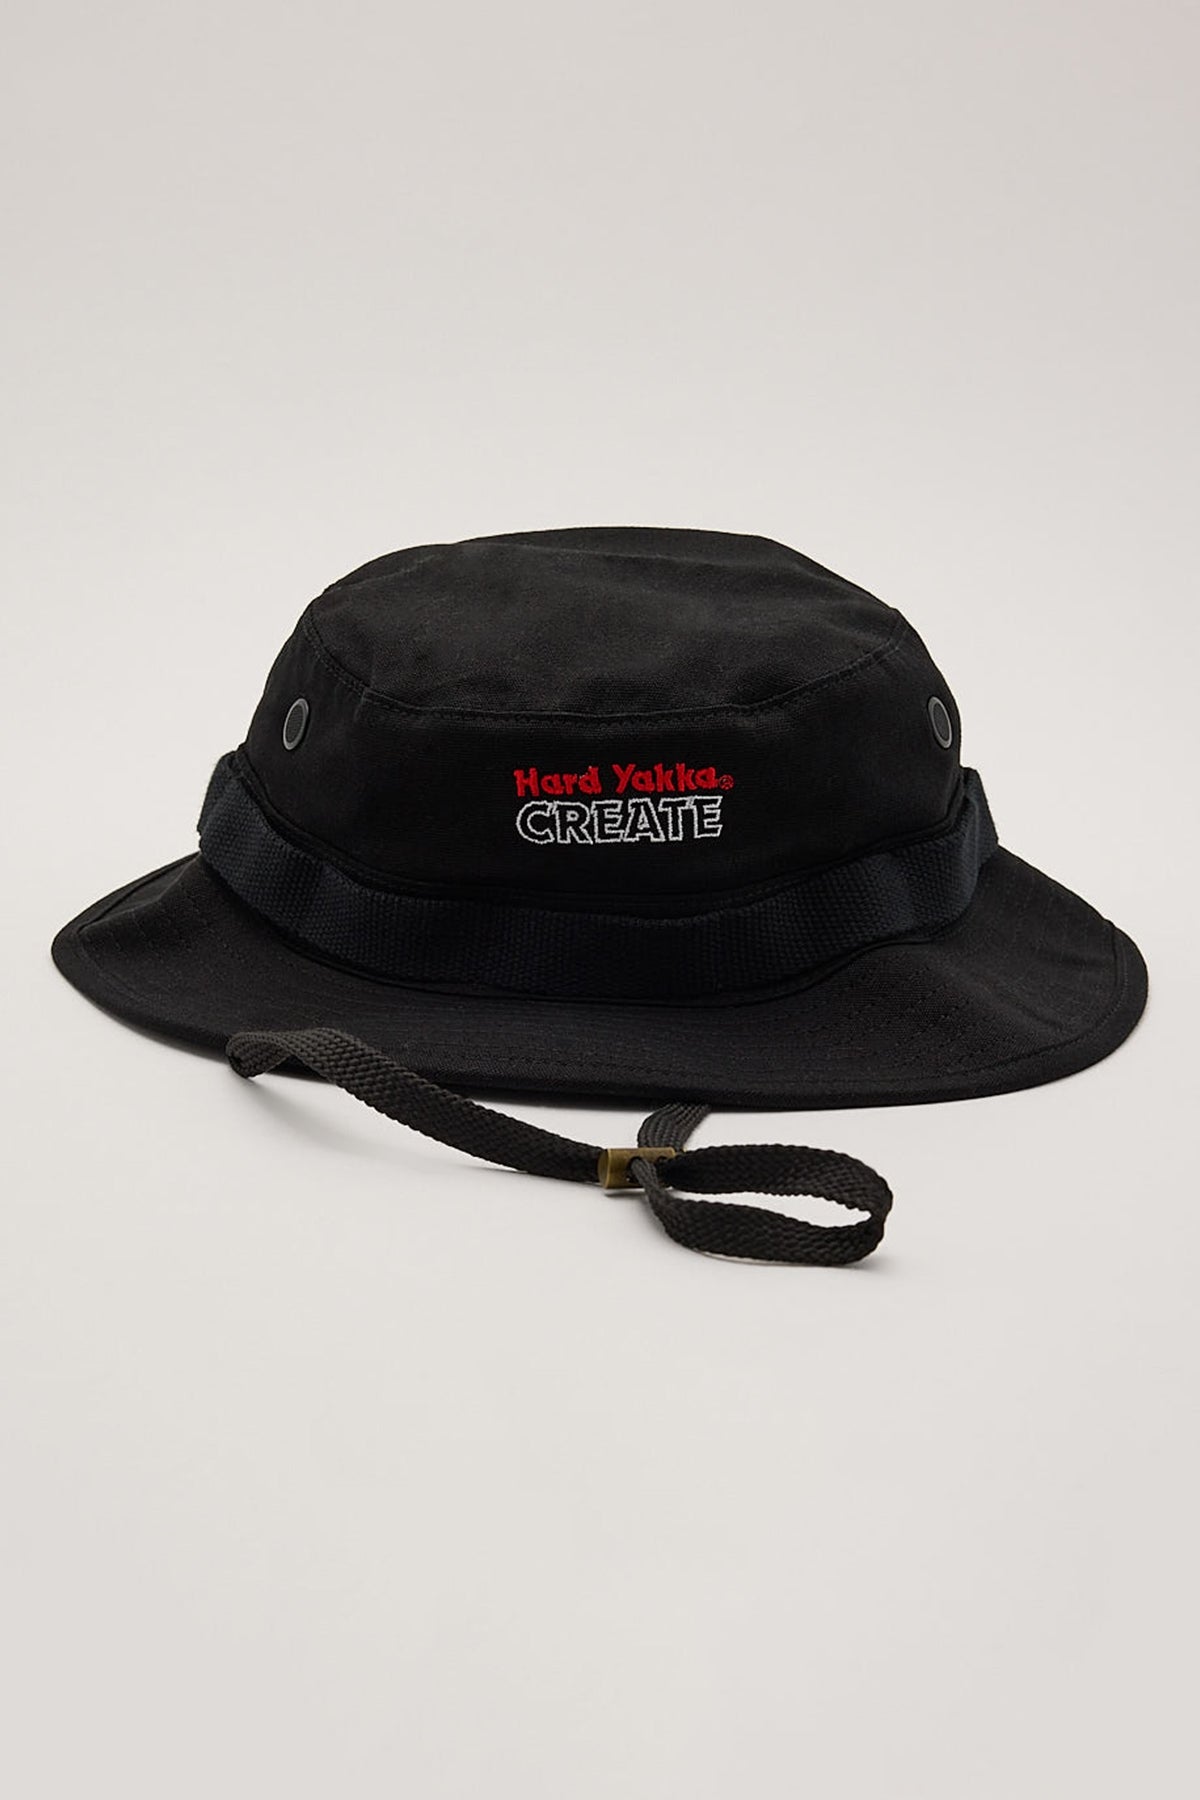 Thrills HYC Boonie Hat Black